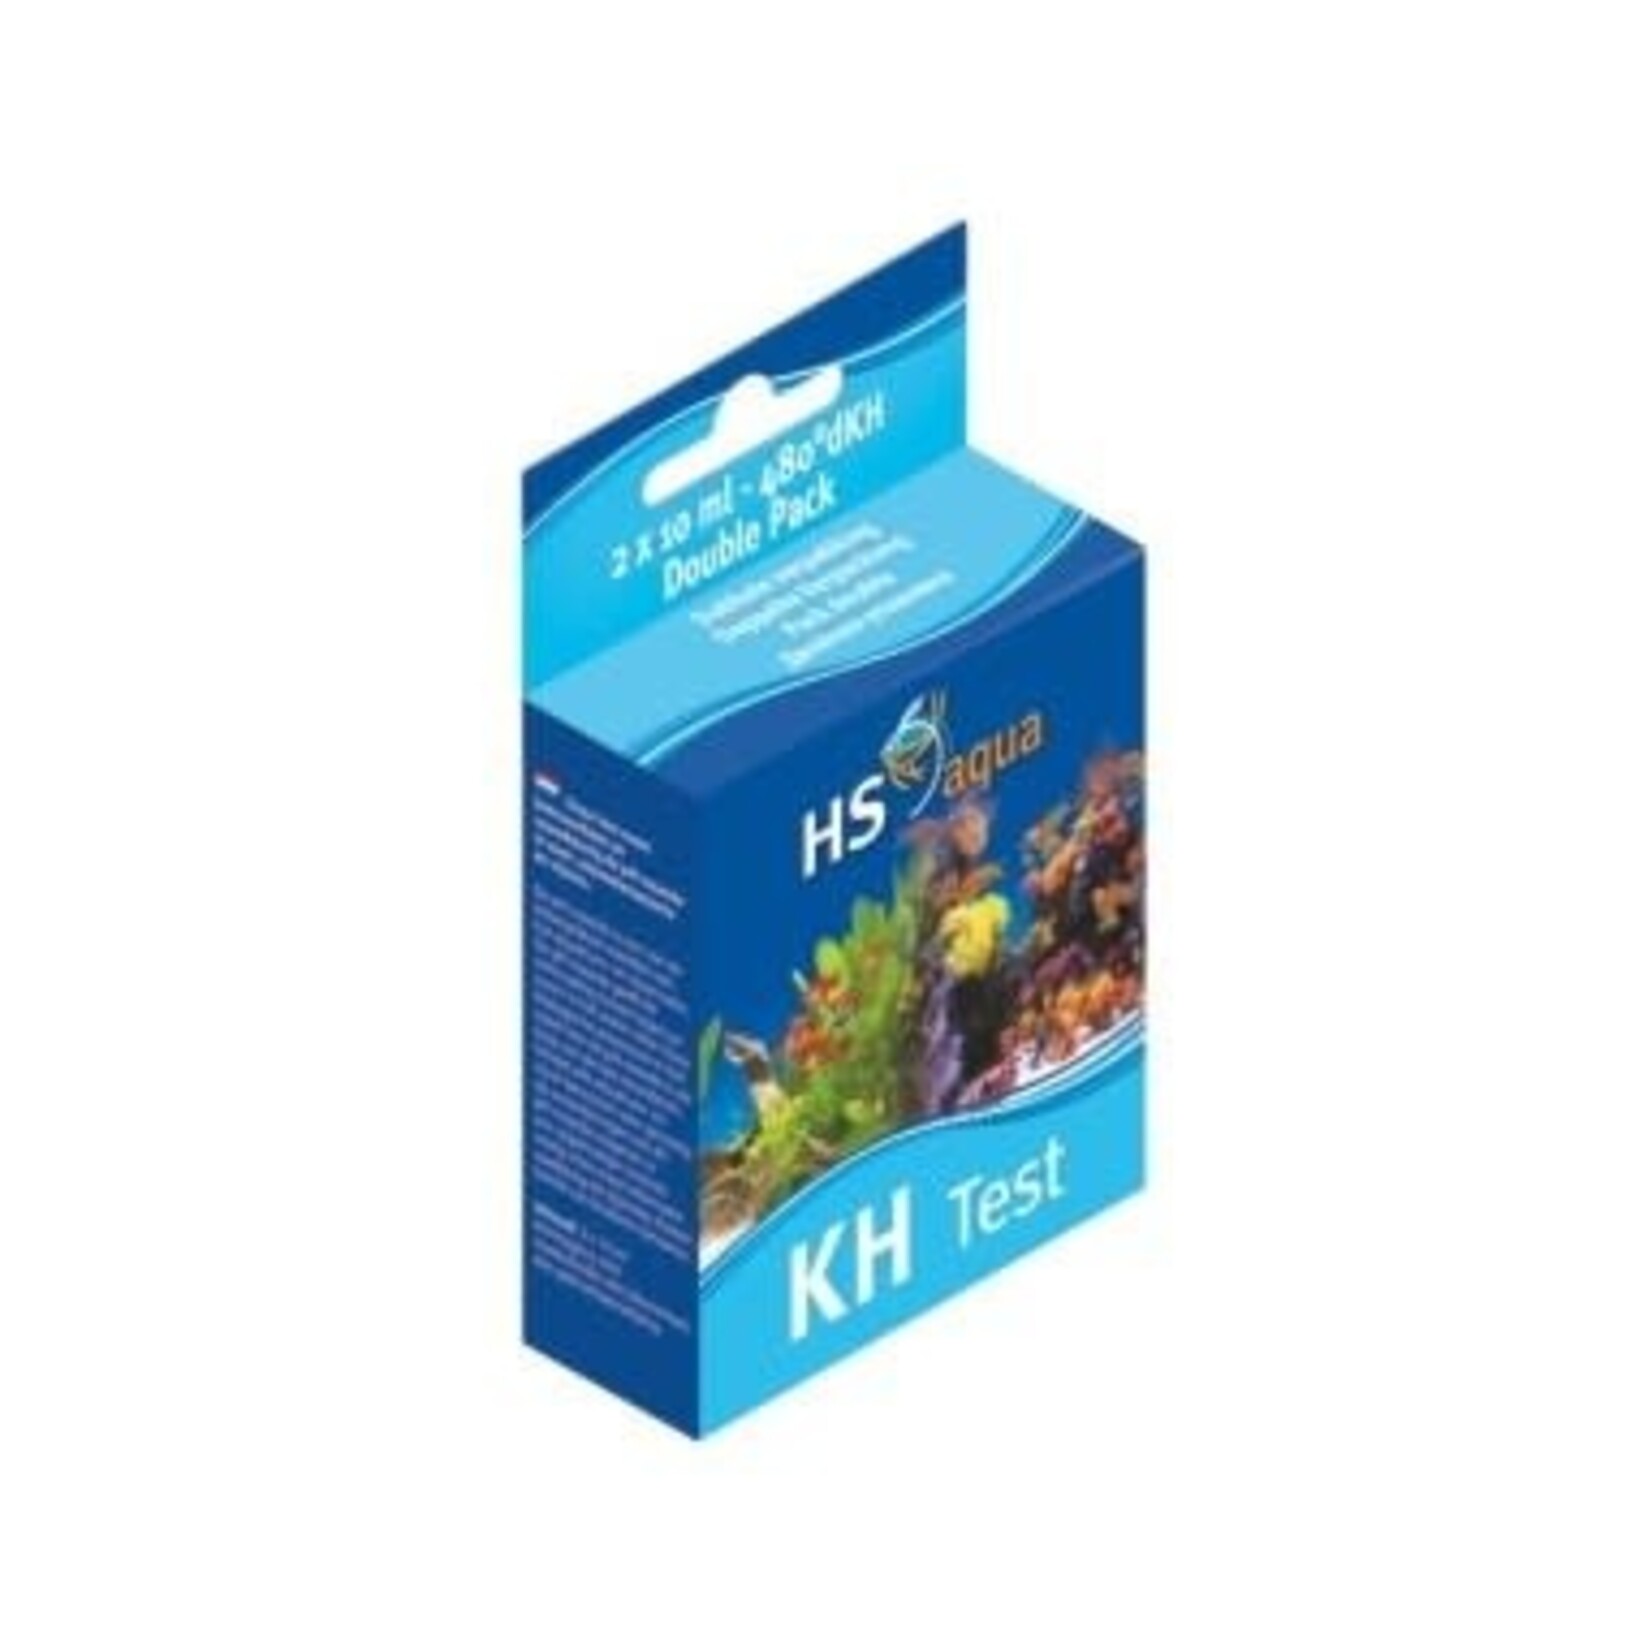 HS Aqua Kh-test combipack